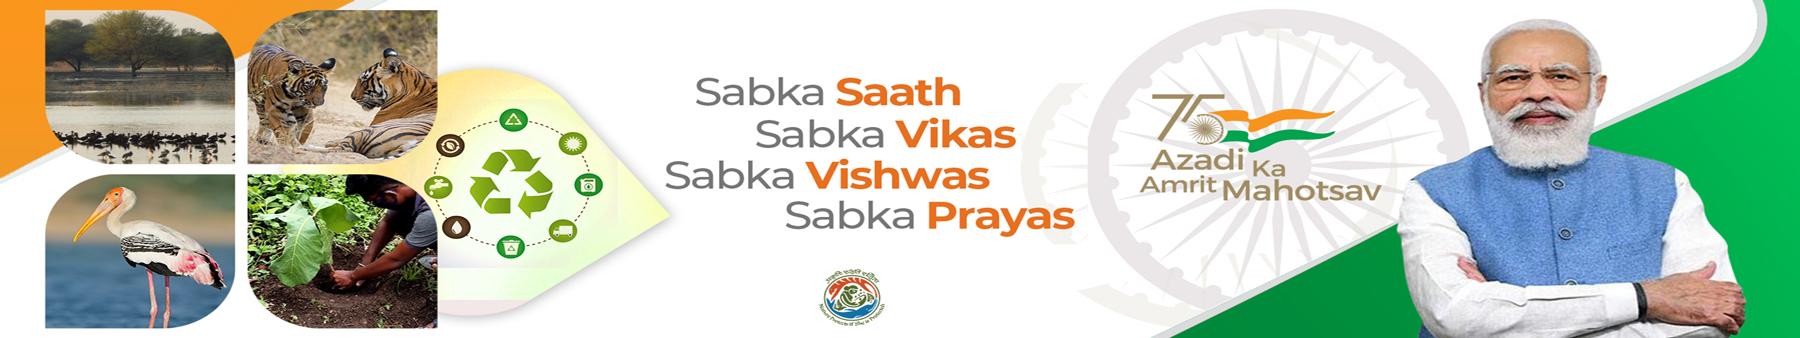 Sabka Saath Sabka Vikas Sabka Vishwas Sabka Prayas